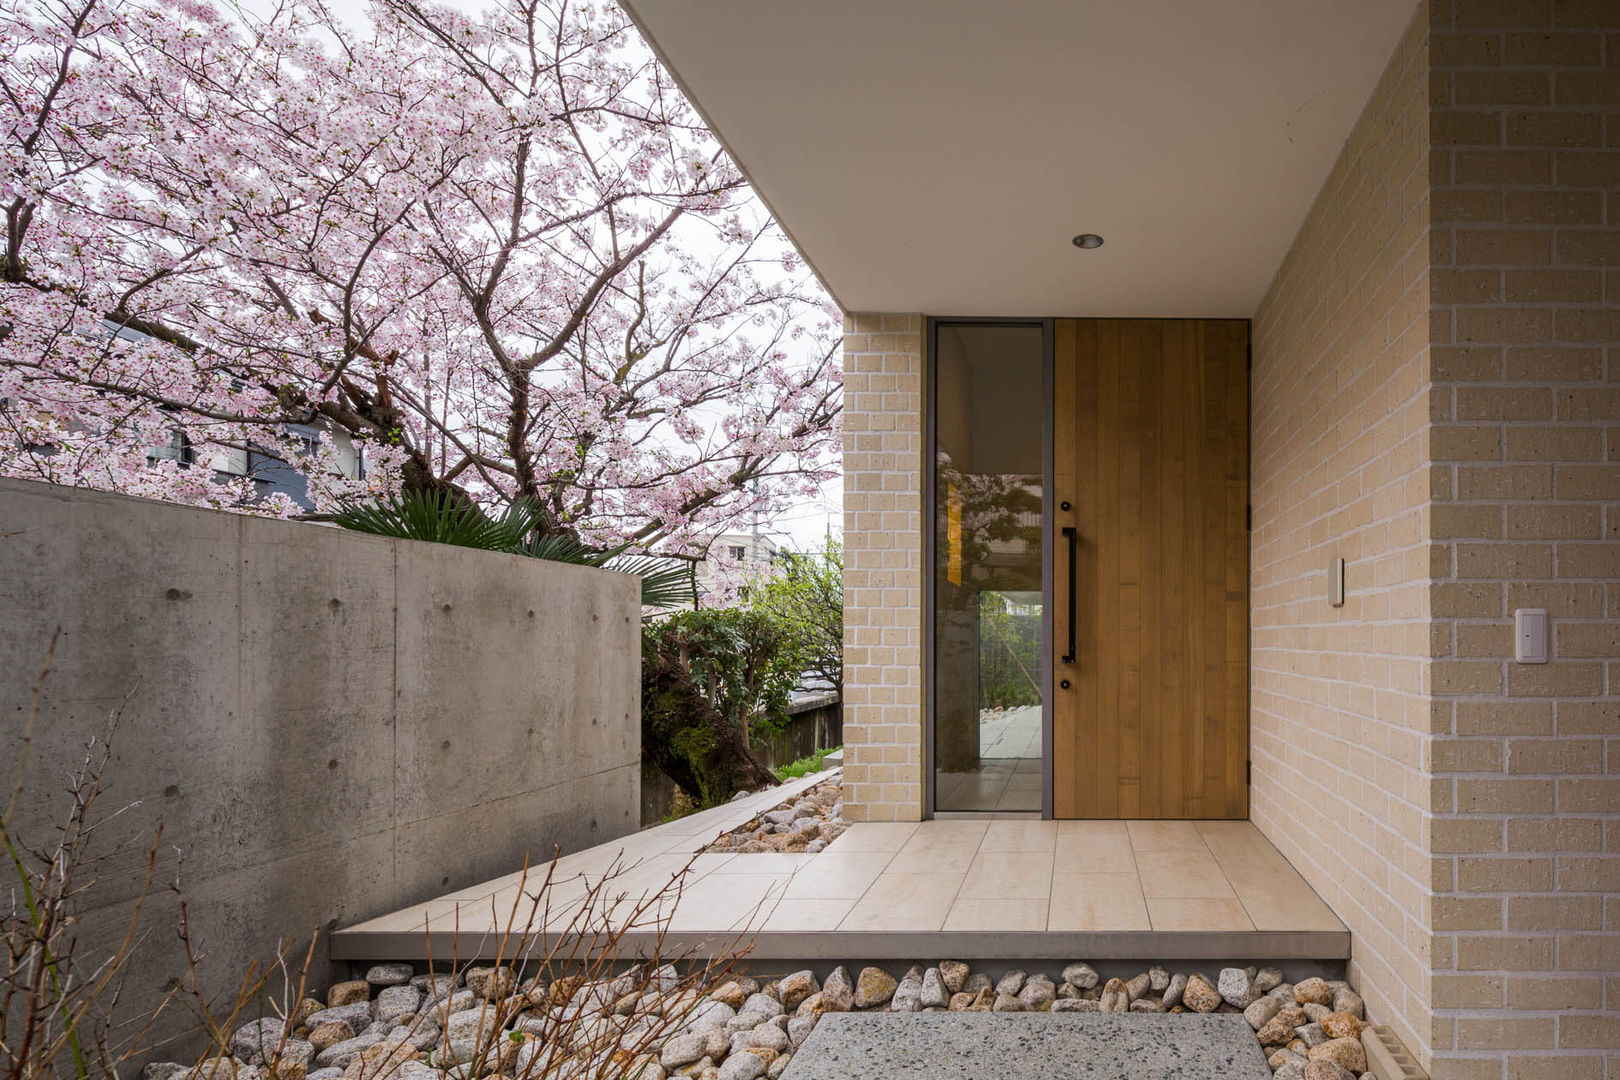 桜と暮らす家, Kenji Yanagawa Architect and Associates Kenji Yanagawa Architect and Associates Corredores, halls e escadas modernos Azulejo